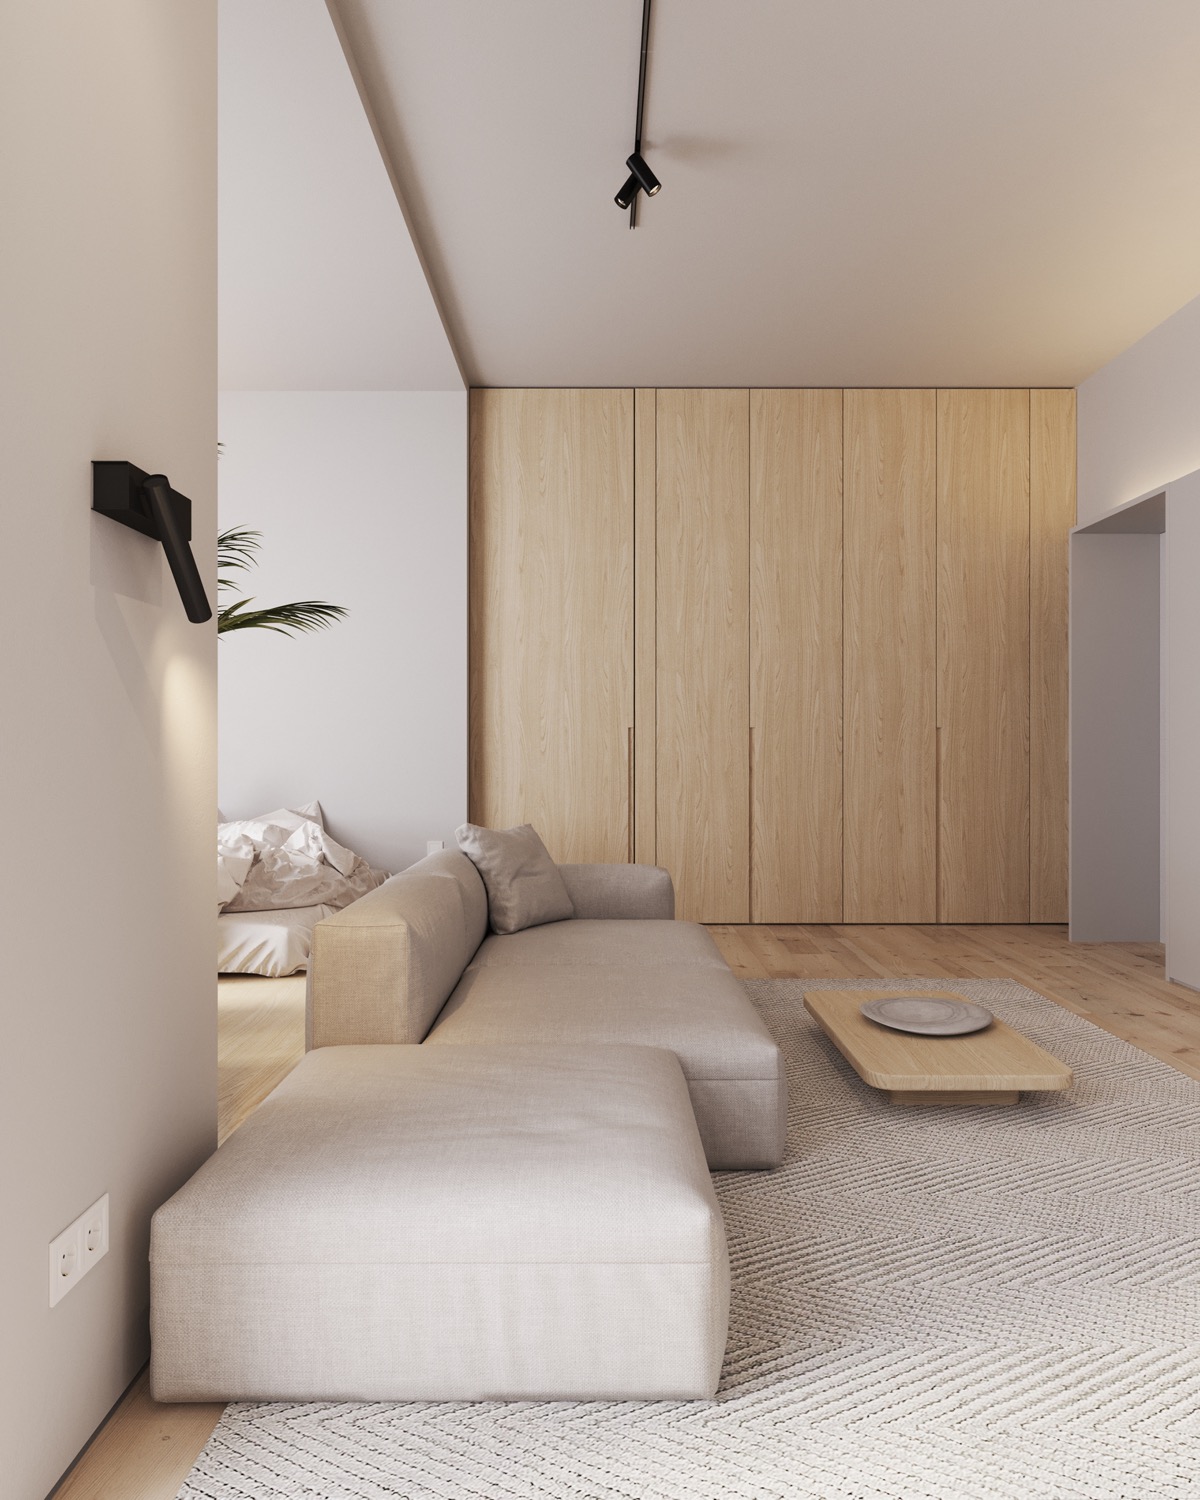 天然木材饰面的现代家居装修设计